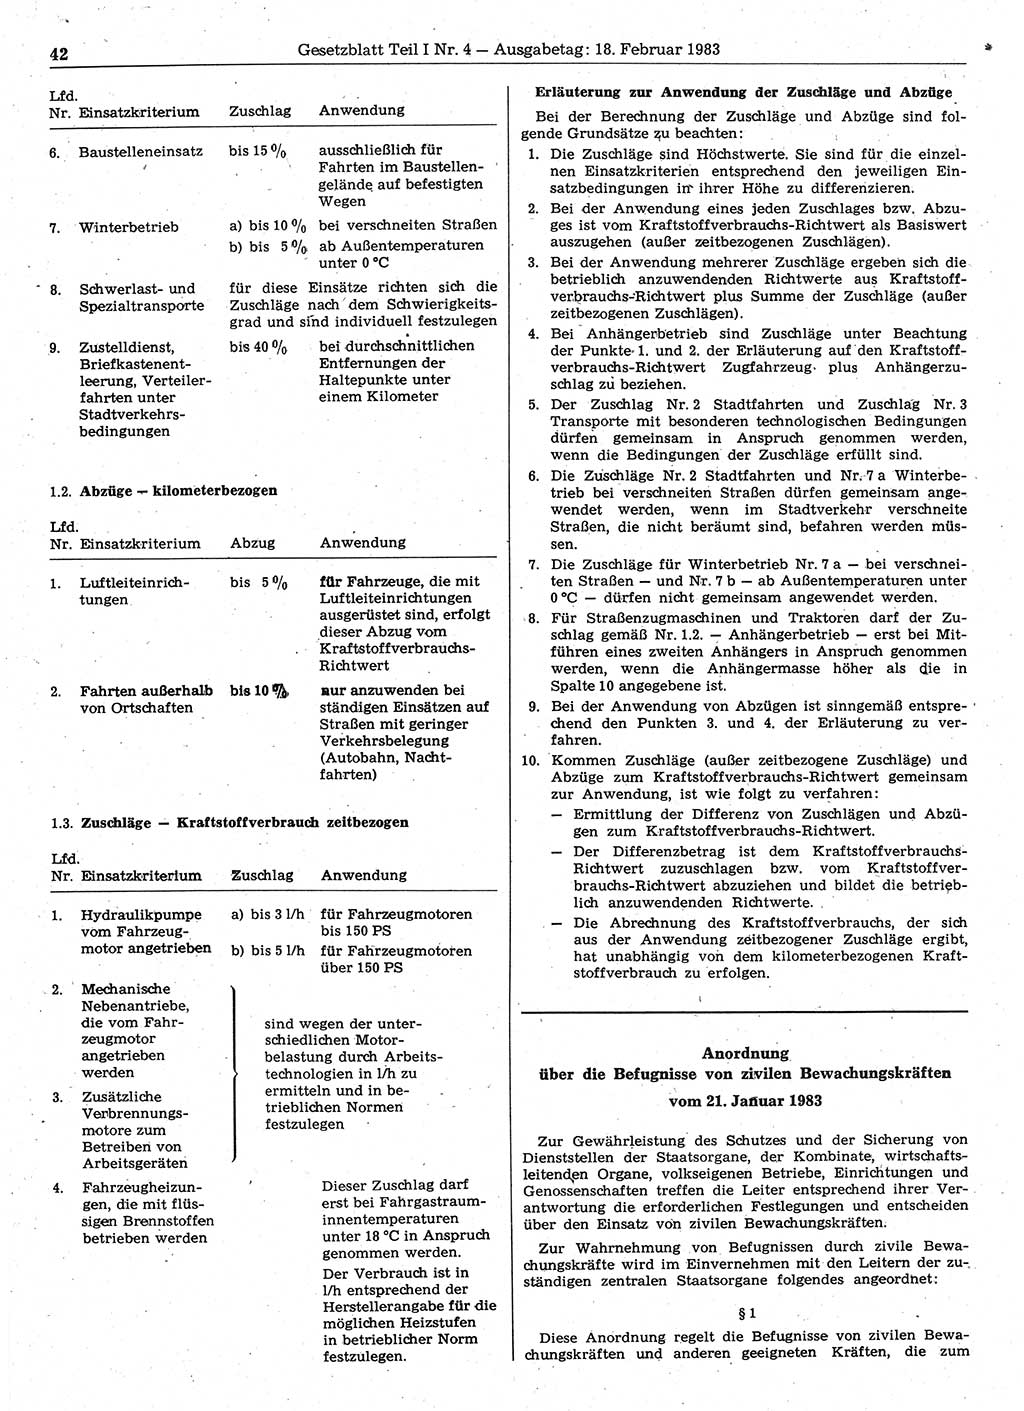 Gesetzblatt (GBl.) der Deutschen Demokratischen Republik (DDR) Teil Ⅰ 1983, Seite 42 (GBl. DDR Ⅰ 1983, S. 42)